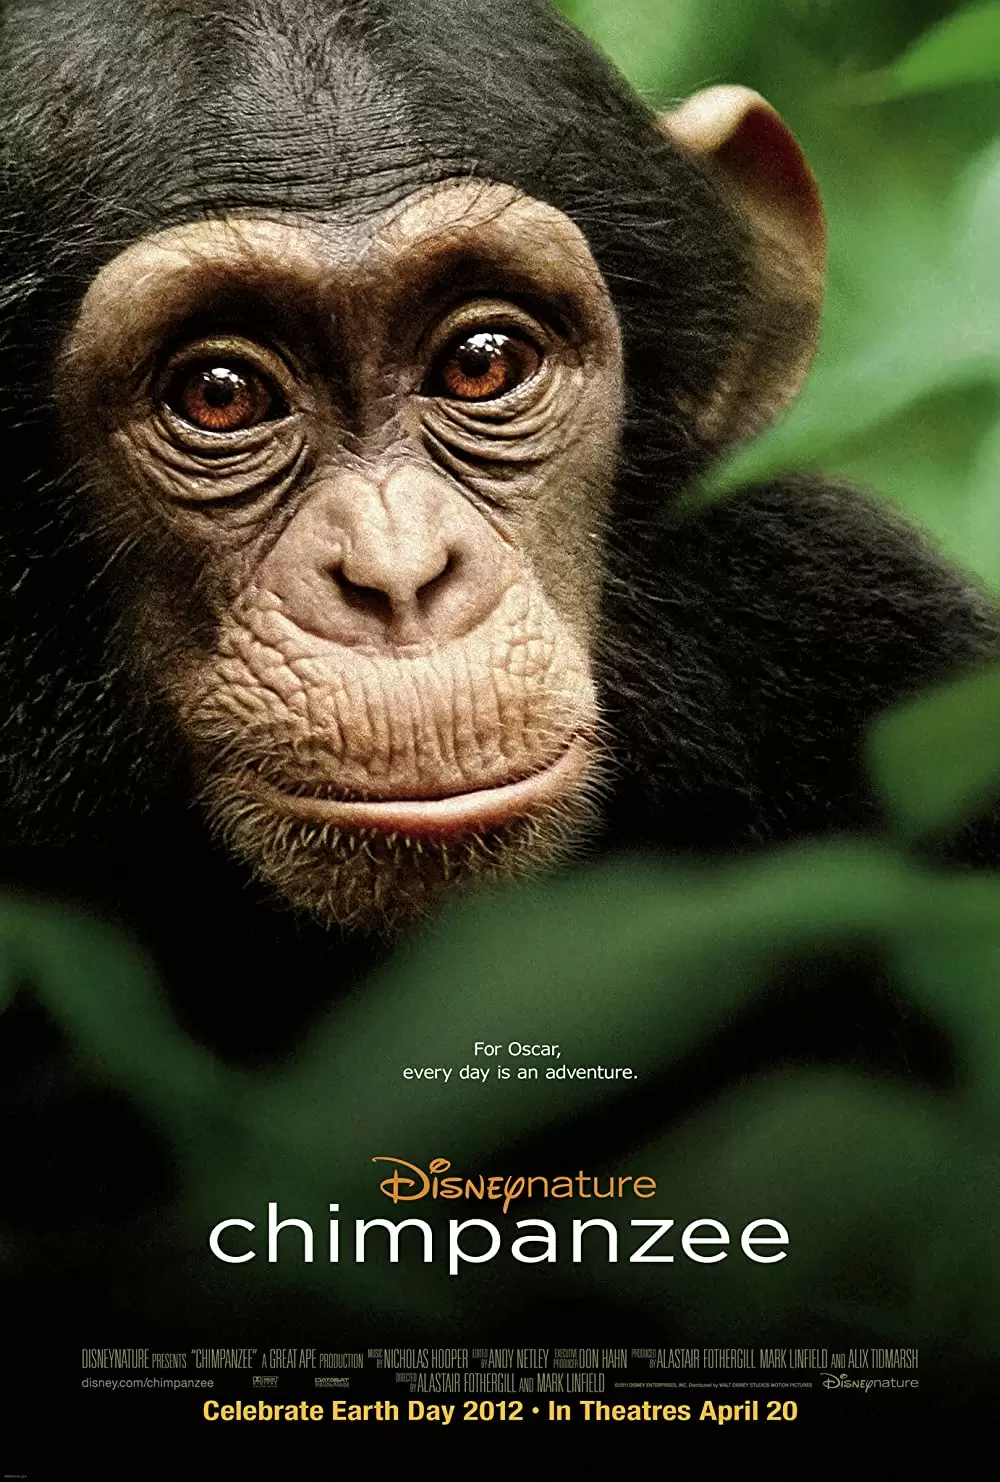 「ディズニーネイチャー チンパンジー 愛すべき大家族」の画像